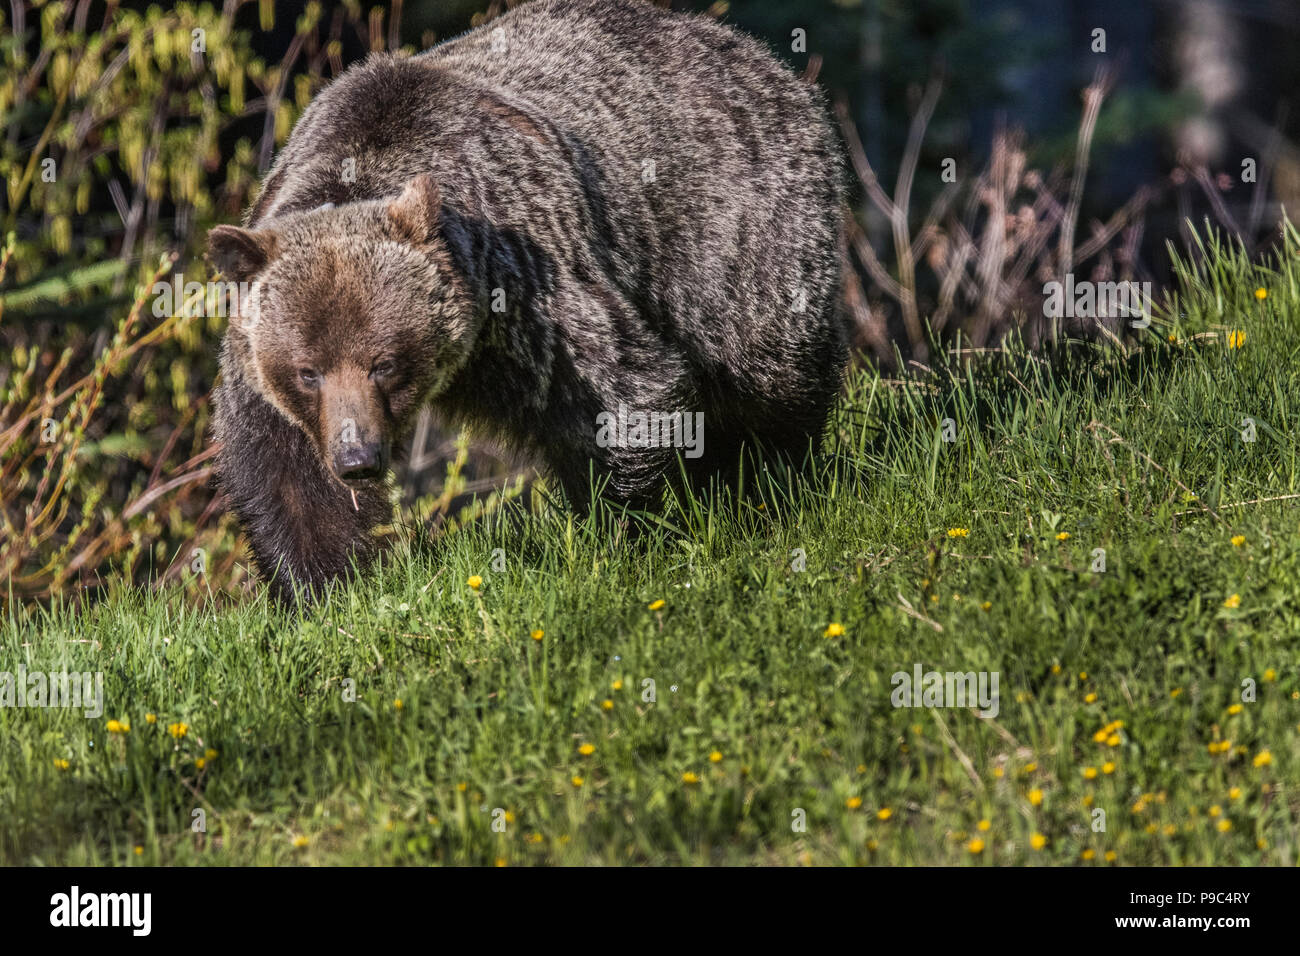 Hembra de oso grizzly (Ursus arctos horribilis) en la cabeza, a nivel de los ojos, tiro de mujeres grizzly, mirando a la cámara, en el campo de diente de león. Foto de stock